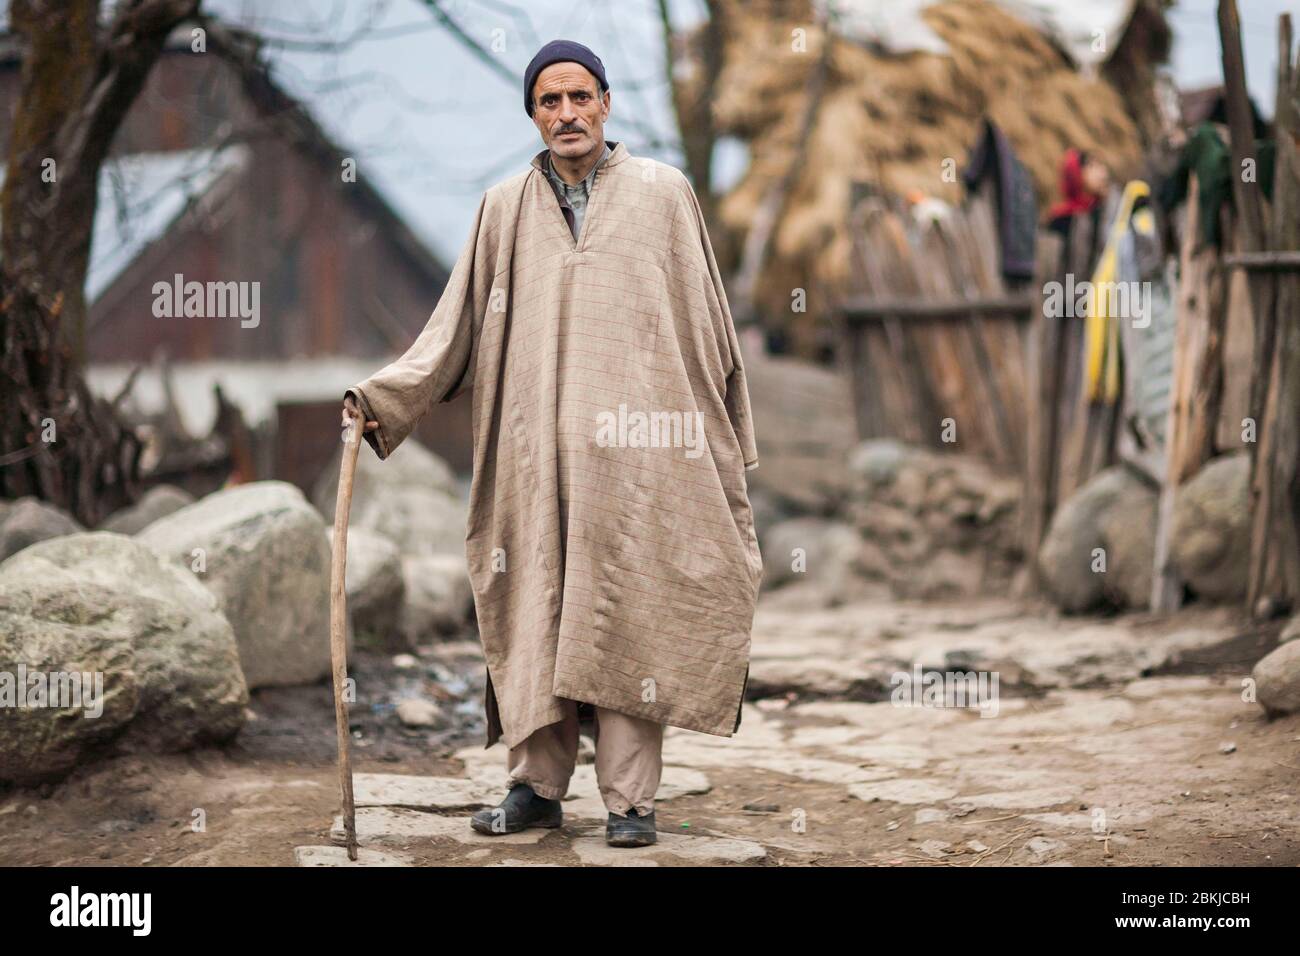 Inde, Jammu-et-Cachemire, Pahalgam, portrait complet d'un homme portant un poncho traditionnel en laine de kashmiri Banque D'Images